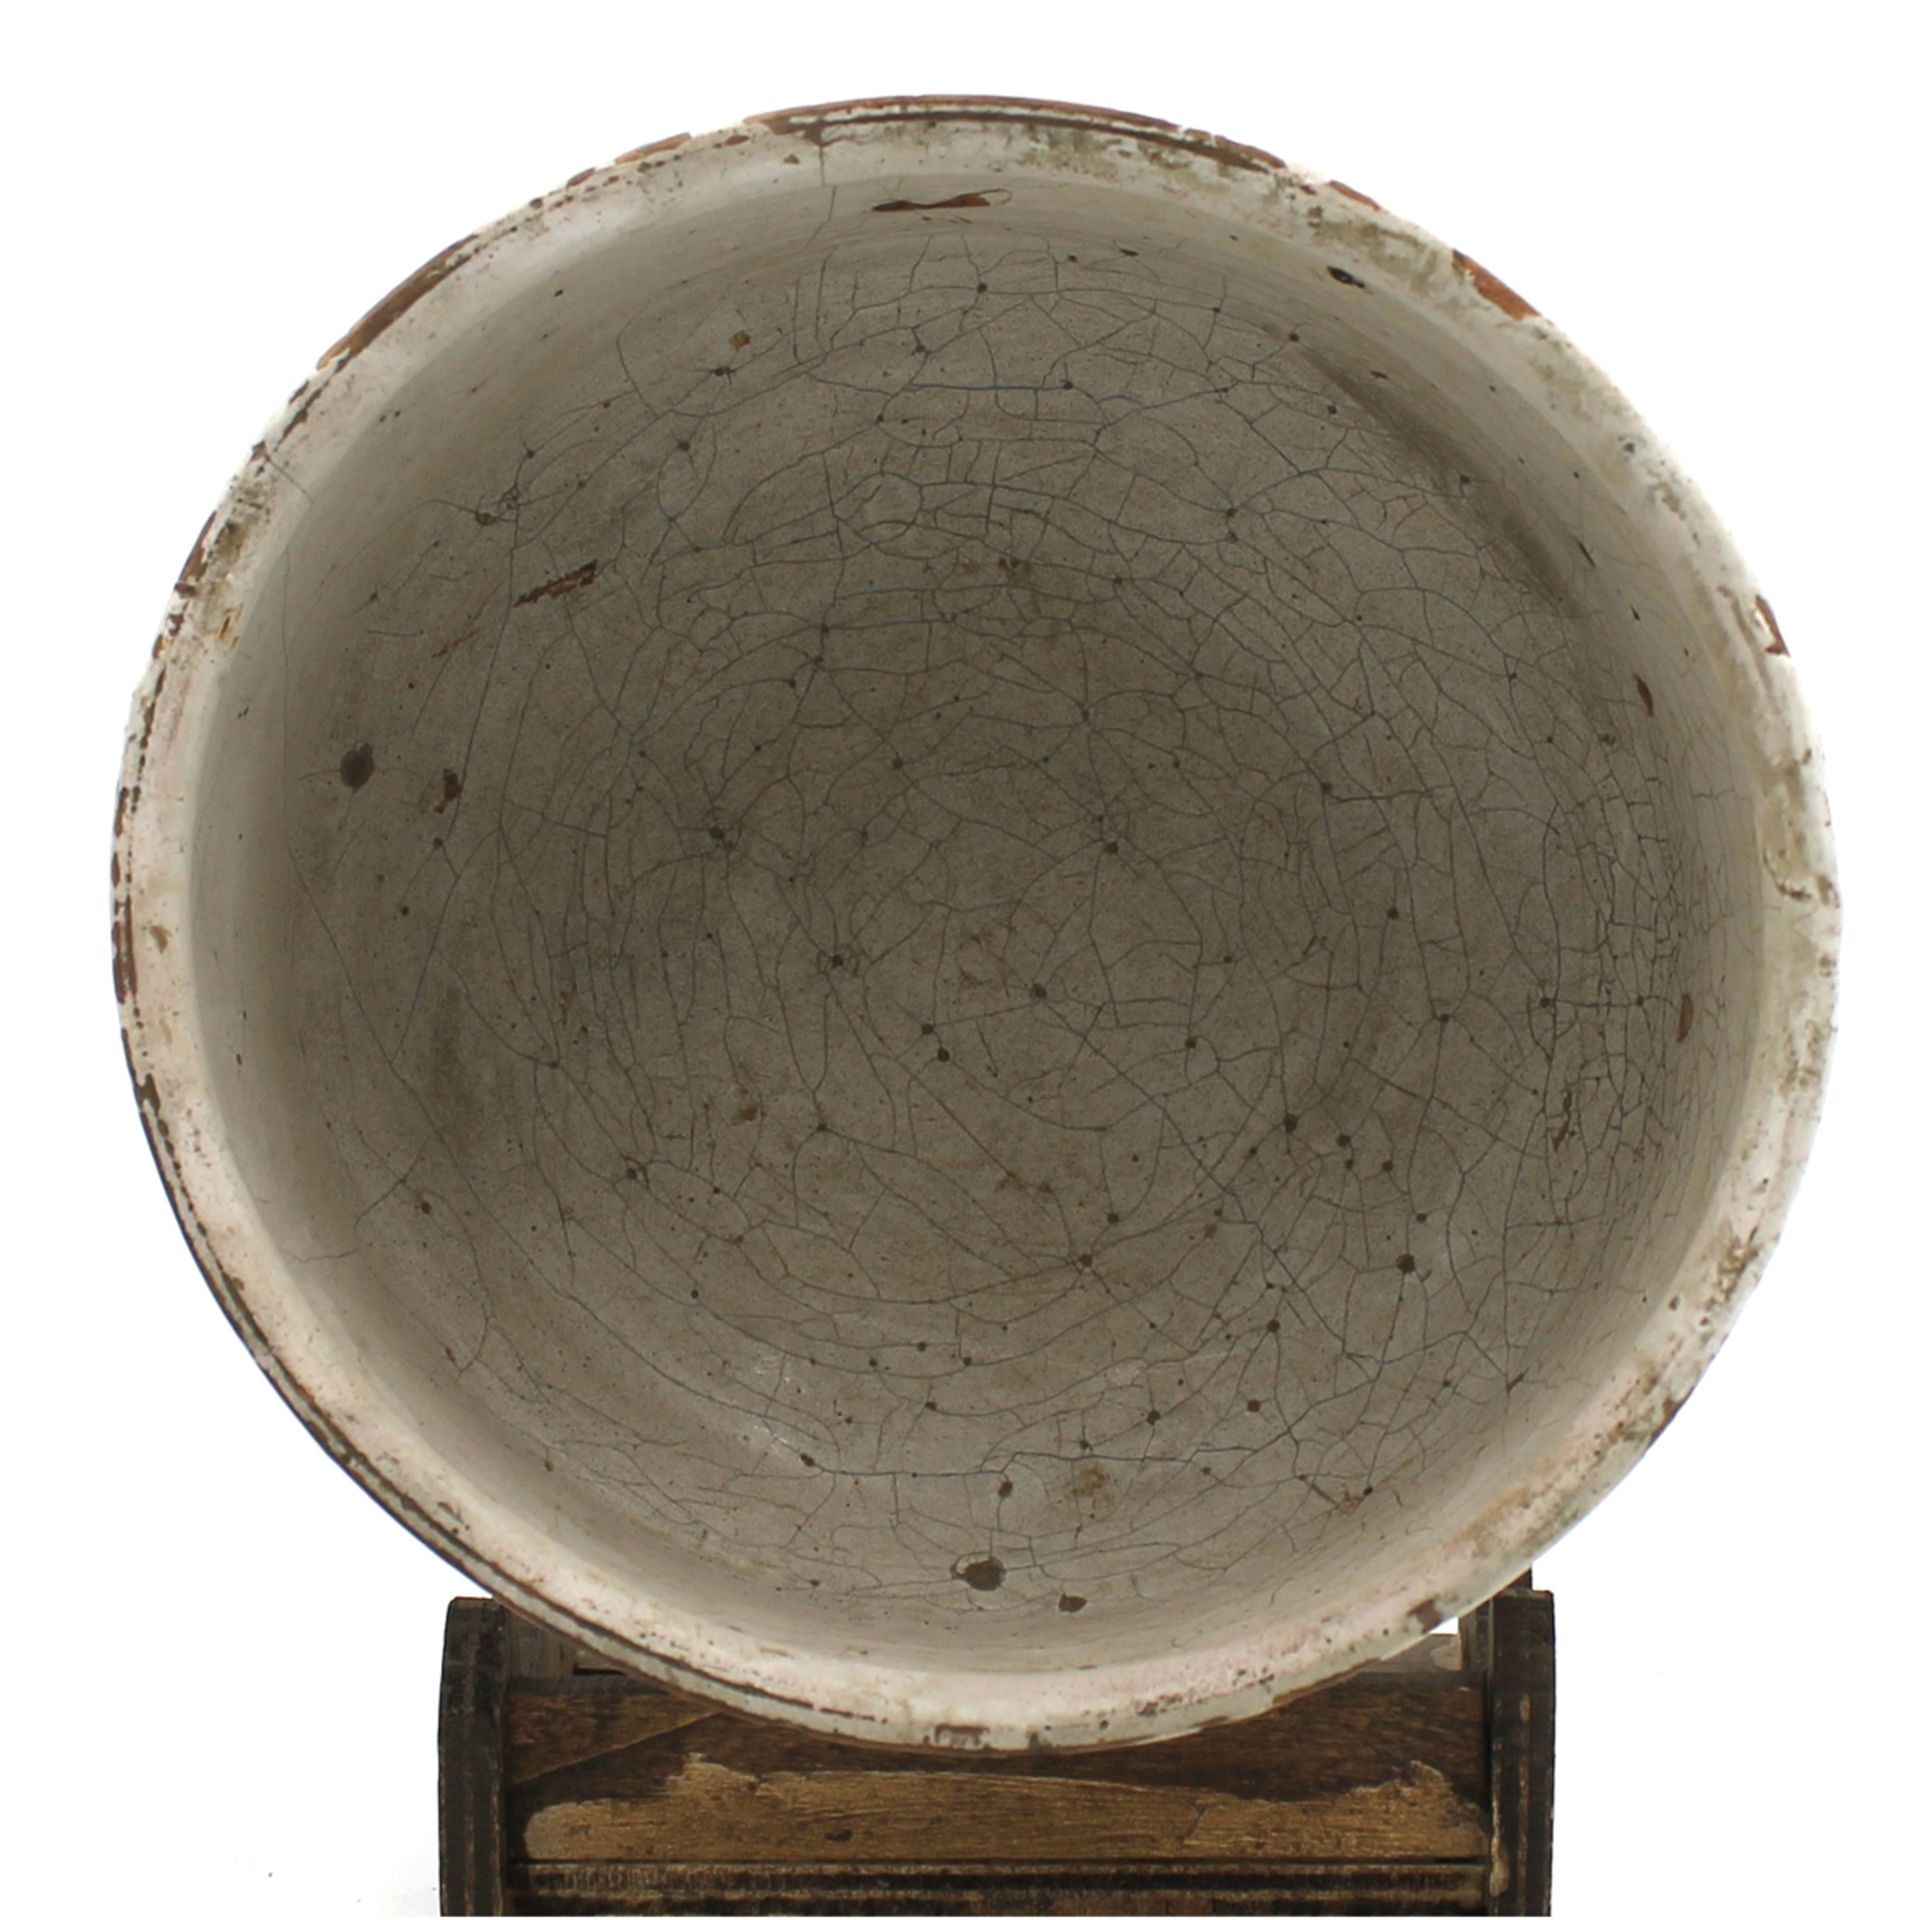 Ciotola - Bowl - Image 2 of 2